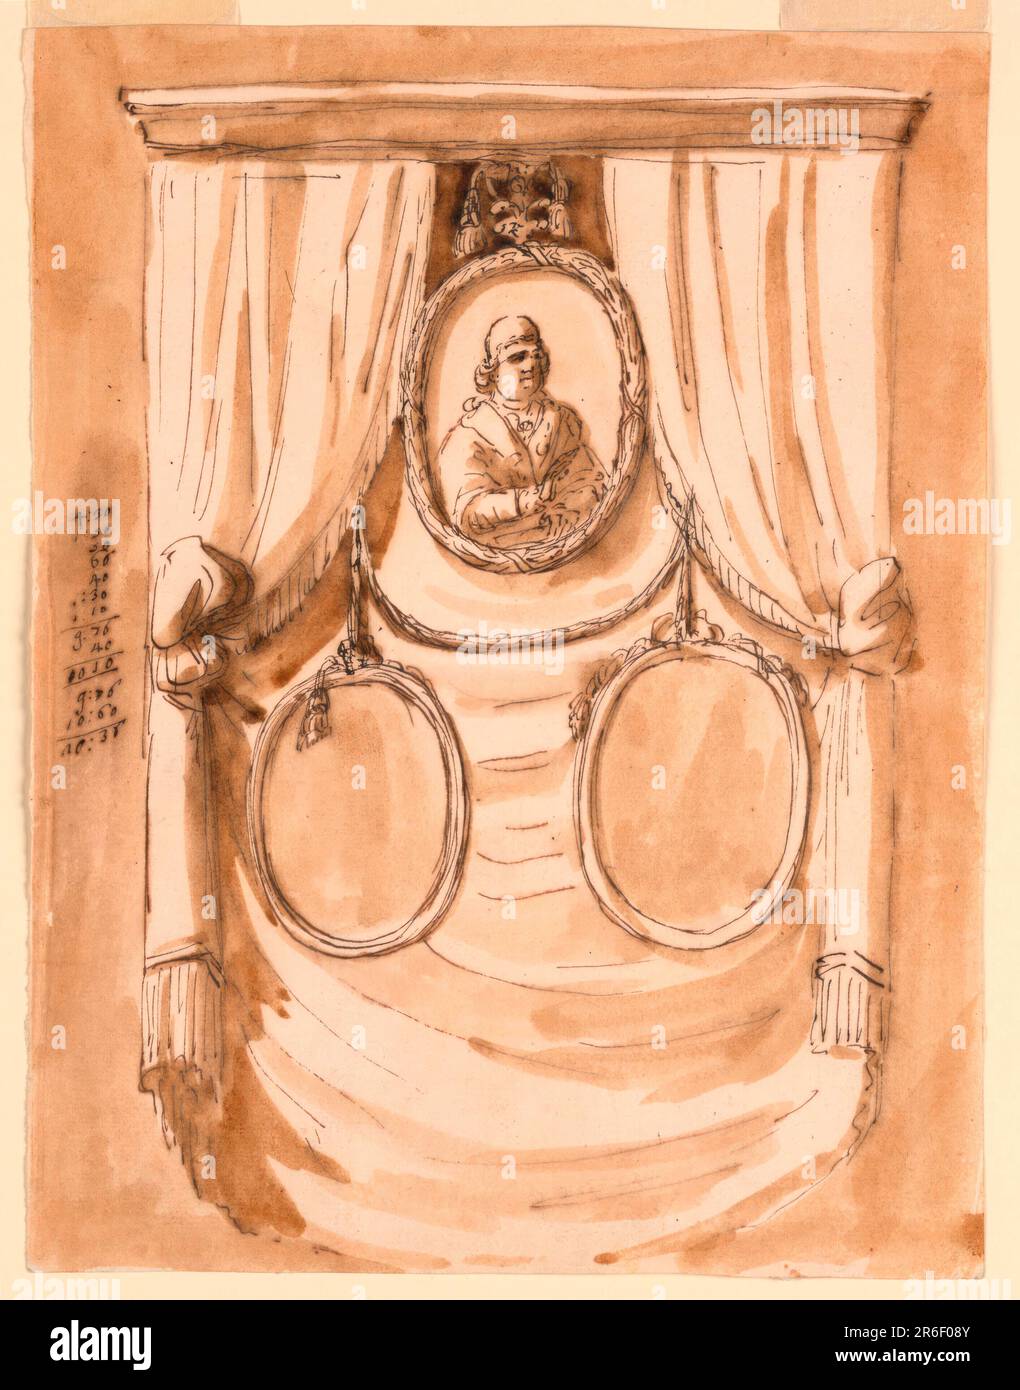 Drei eiförmige Porträts sollen vor einem Vorhang hängen. Papst Pius wird oben gezeigt. Unten sehen Sie ein Soffittenbündel mit zwei Rahmen, die an den Enden hängen. Farbiger Hintergrund. Ein Konto wird auf der linken Seite geschrieben. Stift und braune Tinte, Bürste und braune Wäsche auf weißem, liegendem Papier. Datum: 1793. Museum: Cooper Hewitt, Smithsonian Design Museum. Stockfoto